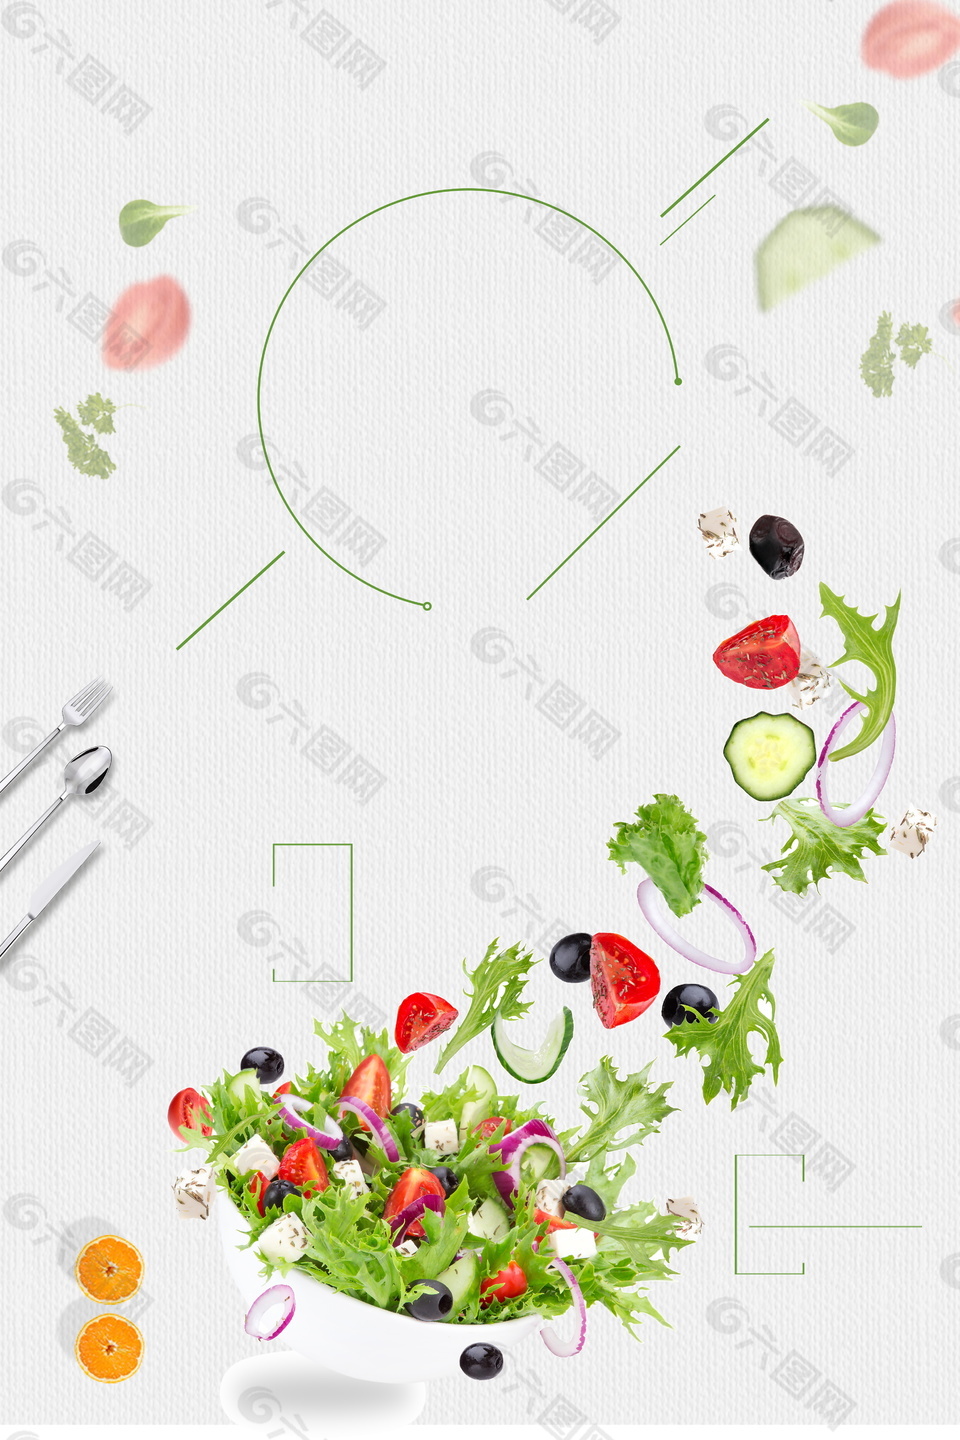 创意简约小清新蔬菜水果沙拉背景素材